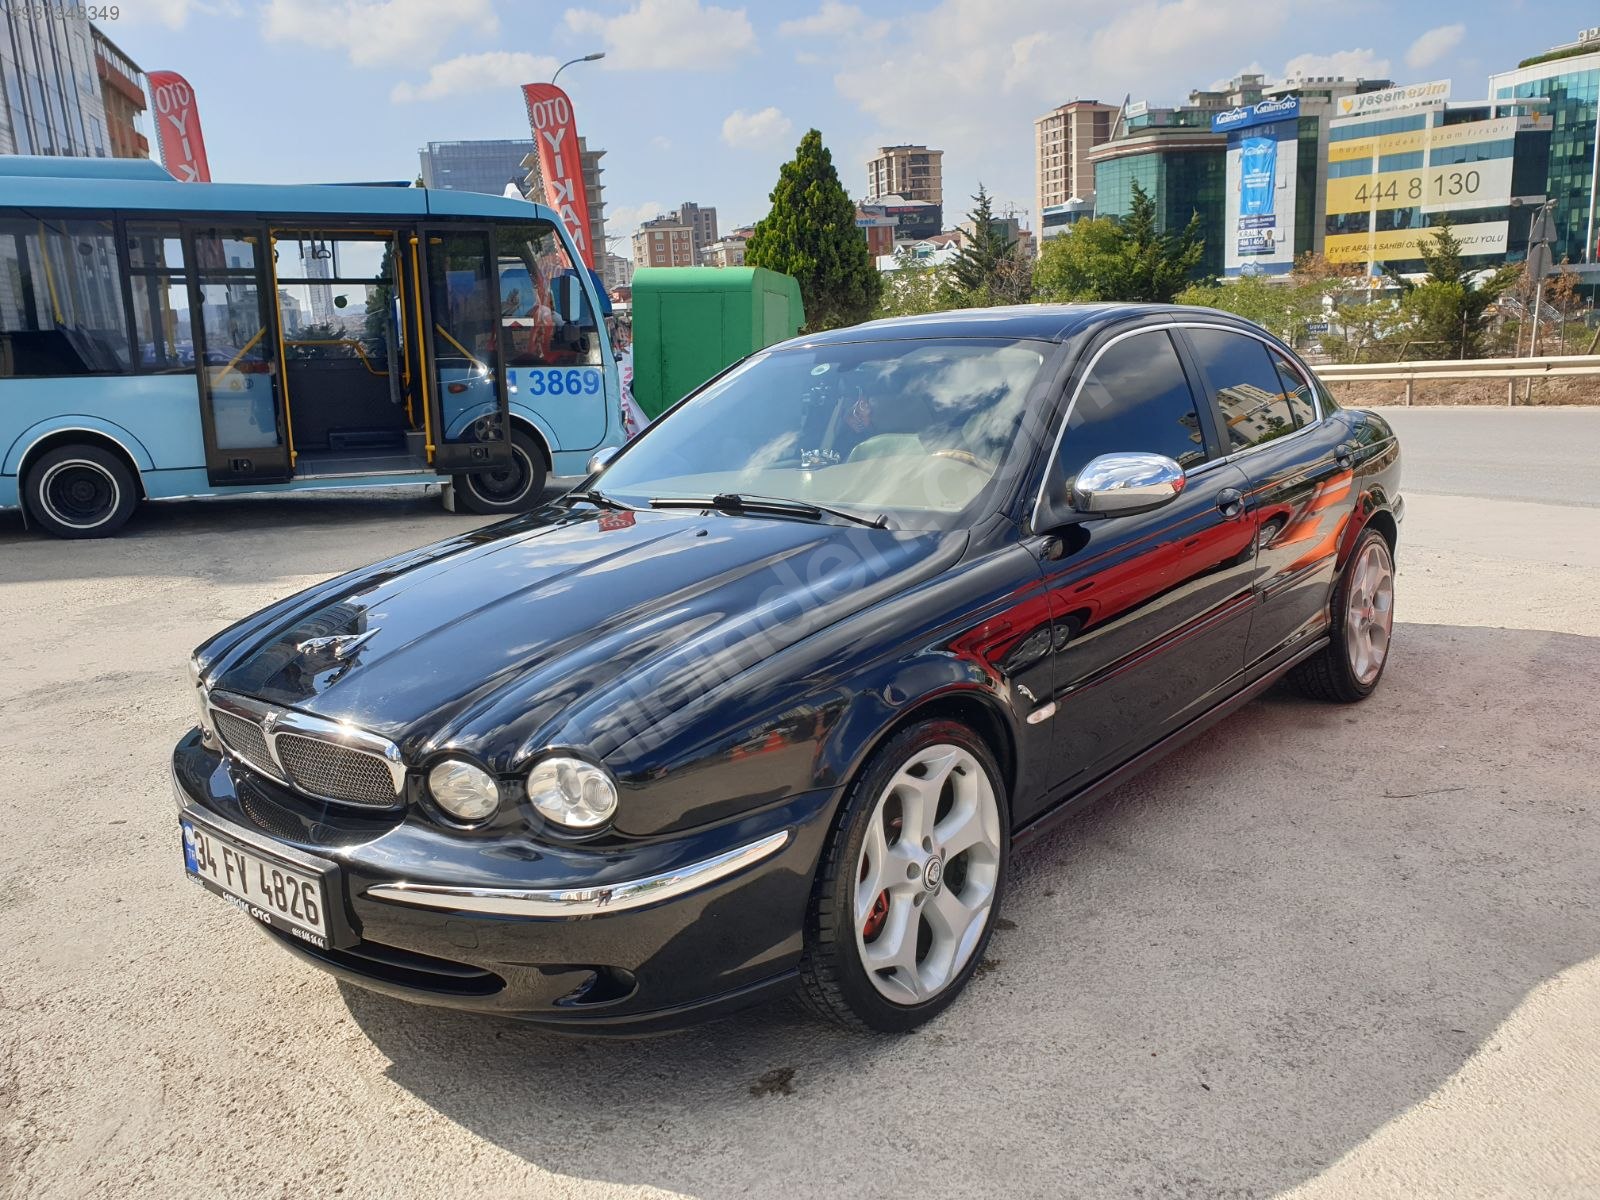 İzmir Jaguar Fiyatları & Modelleri ...